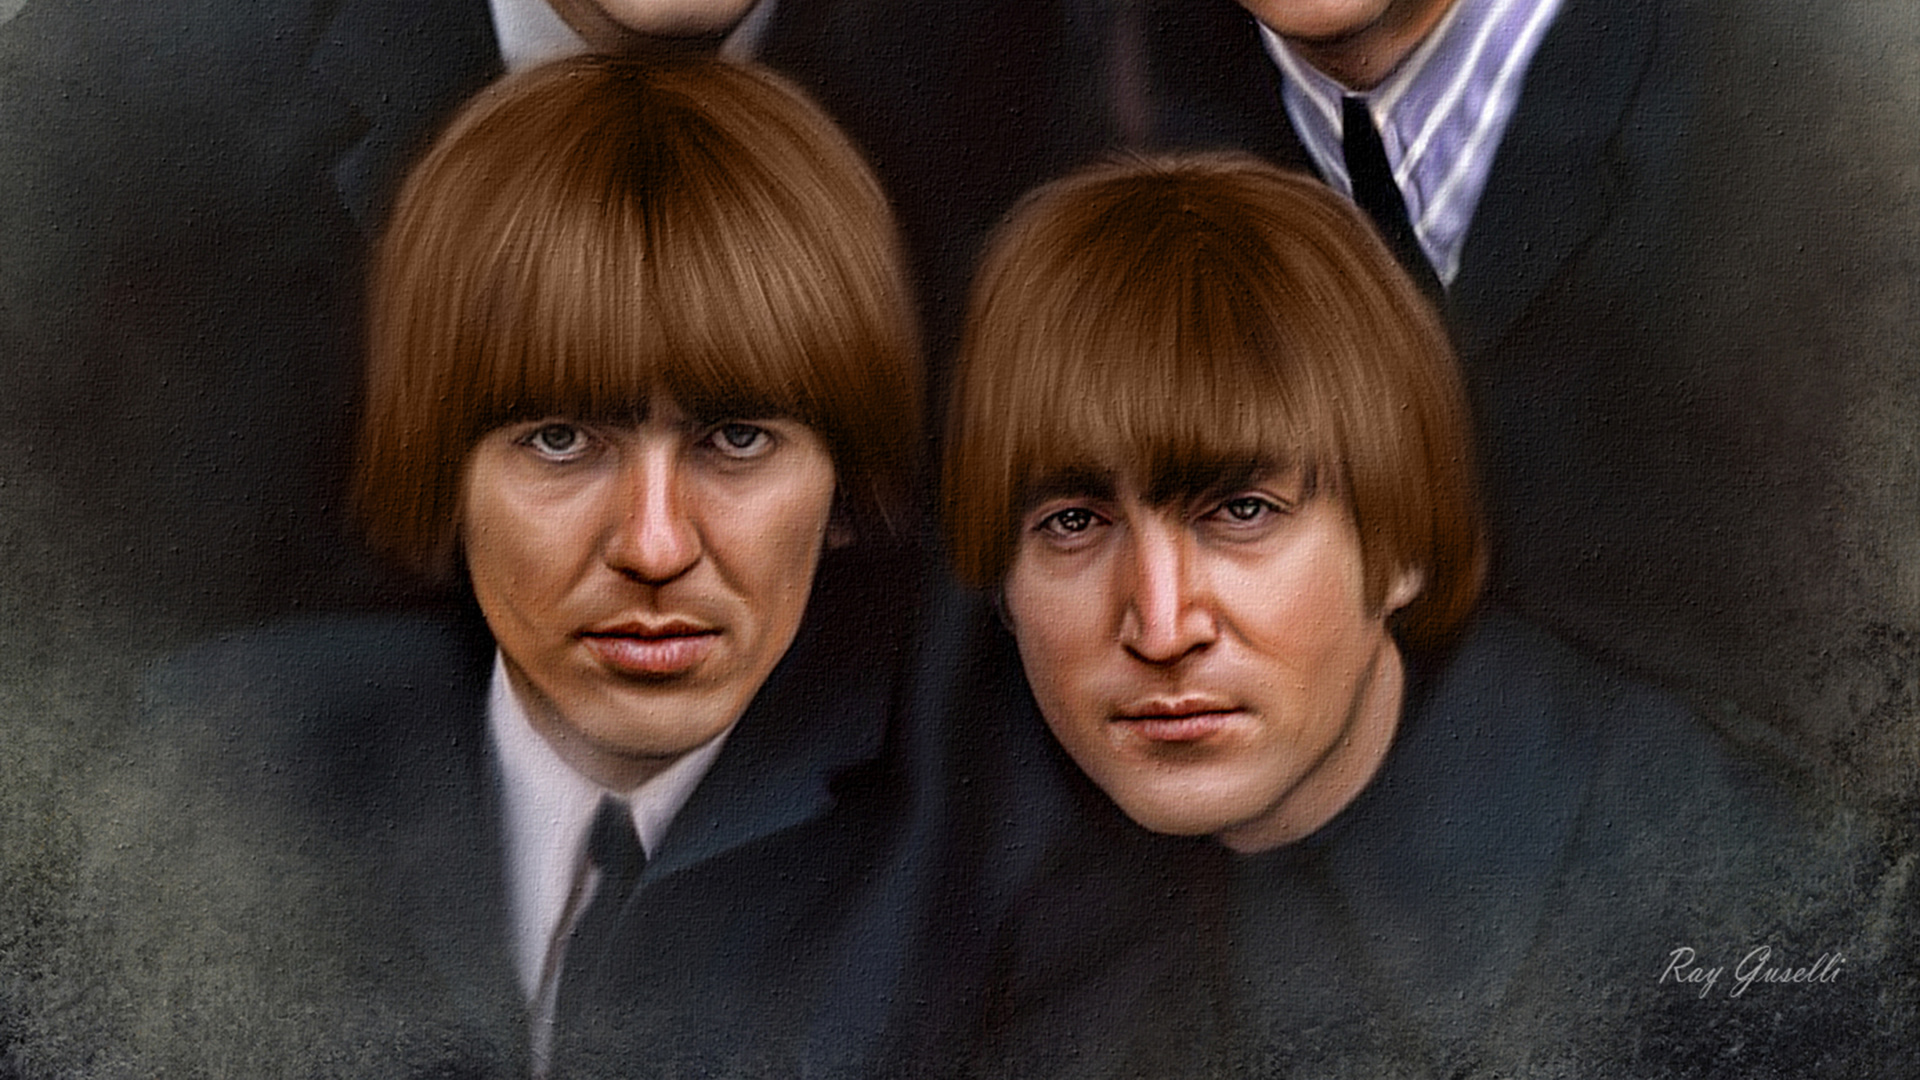 约翰*列侬, 保罗*麦卡特尼, 乔治*哈里森, Ringo Starr, 披头士 8x10 壁纸 1920x1080 允许